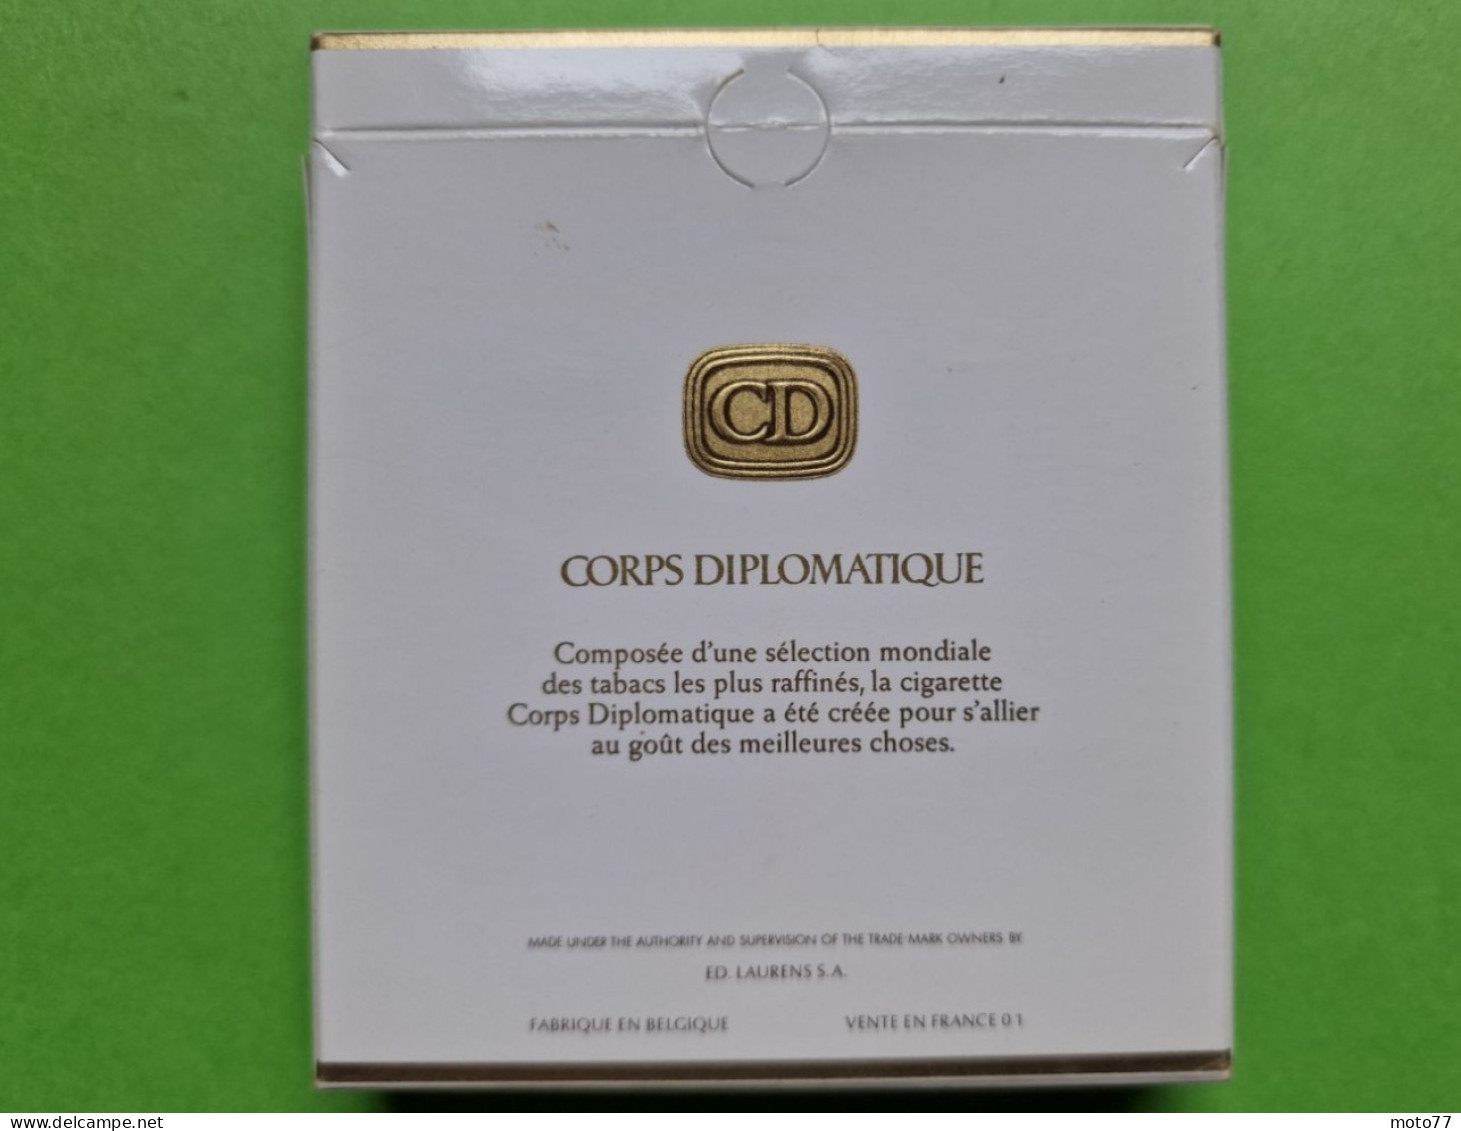 Ancien PAQUET De CIGARETTES Vide - CD CORPS DIPLOMATIQUE - Vers 1980 - Etuis à Cigarettes Vides